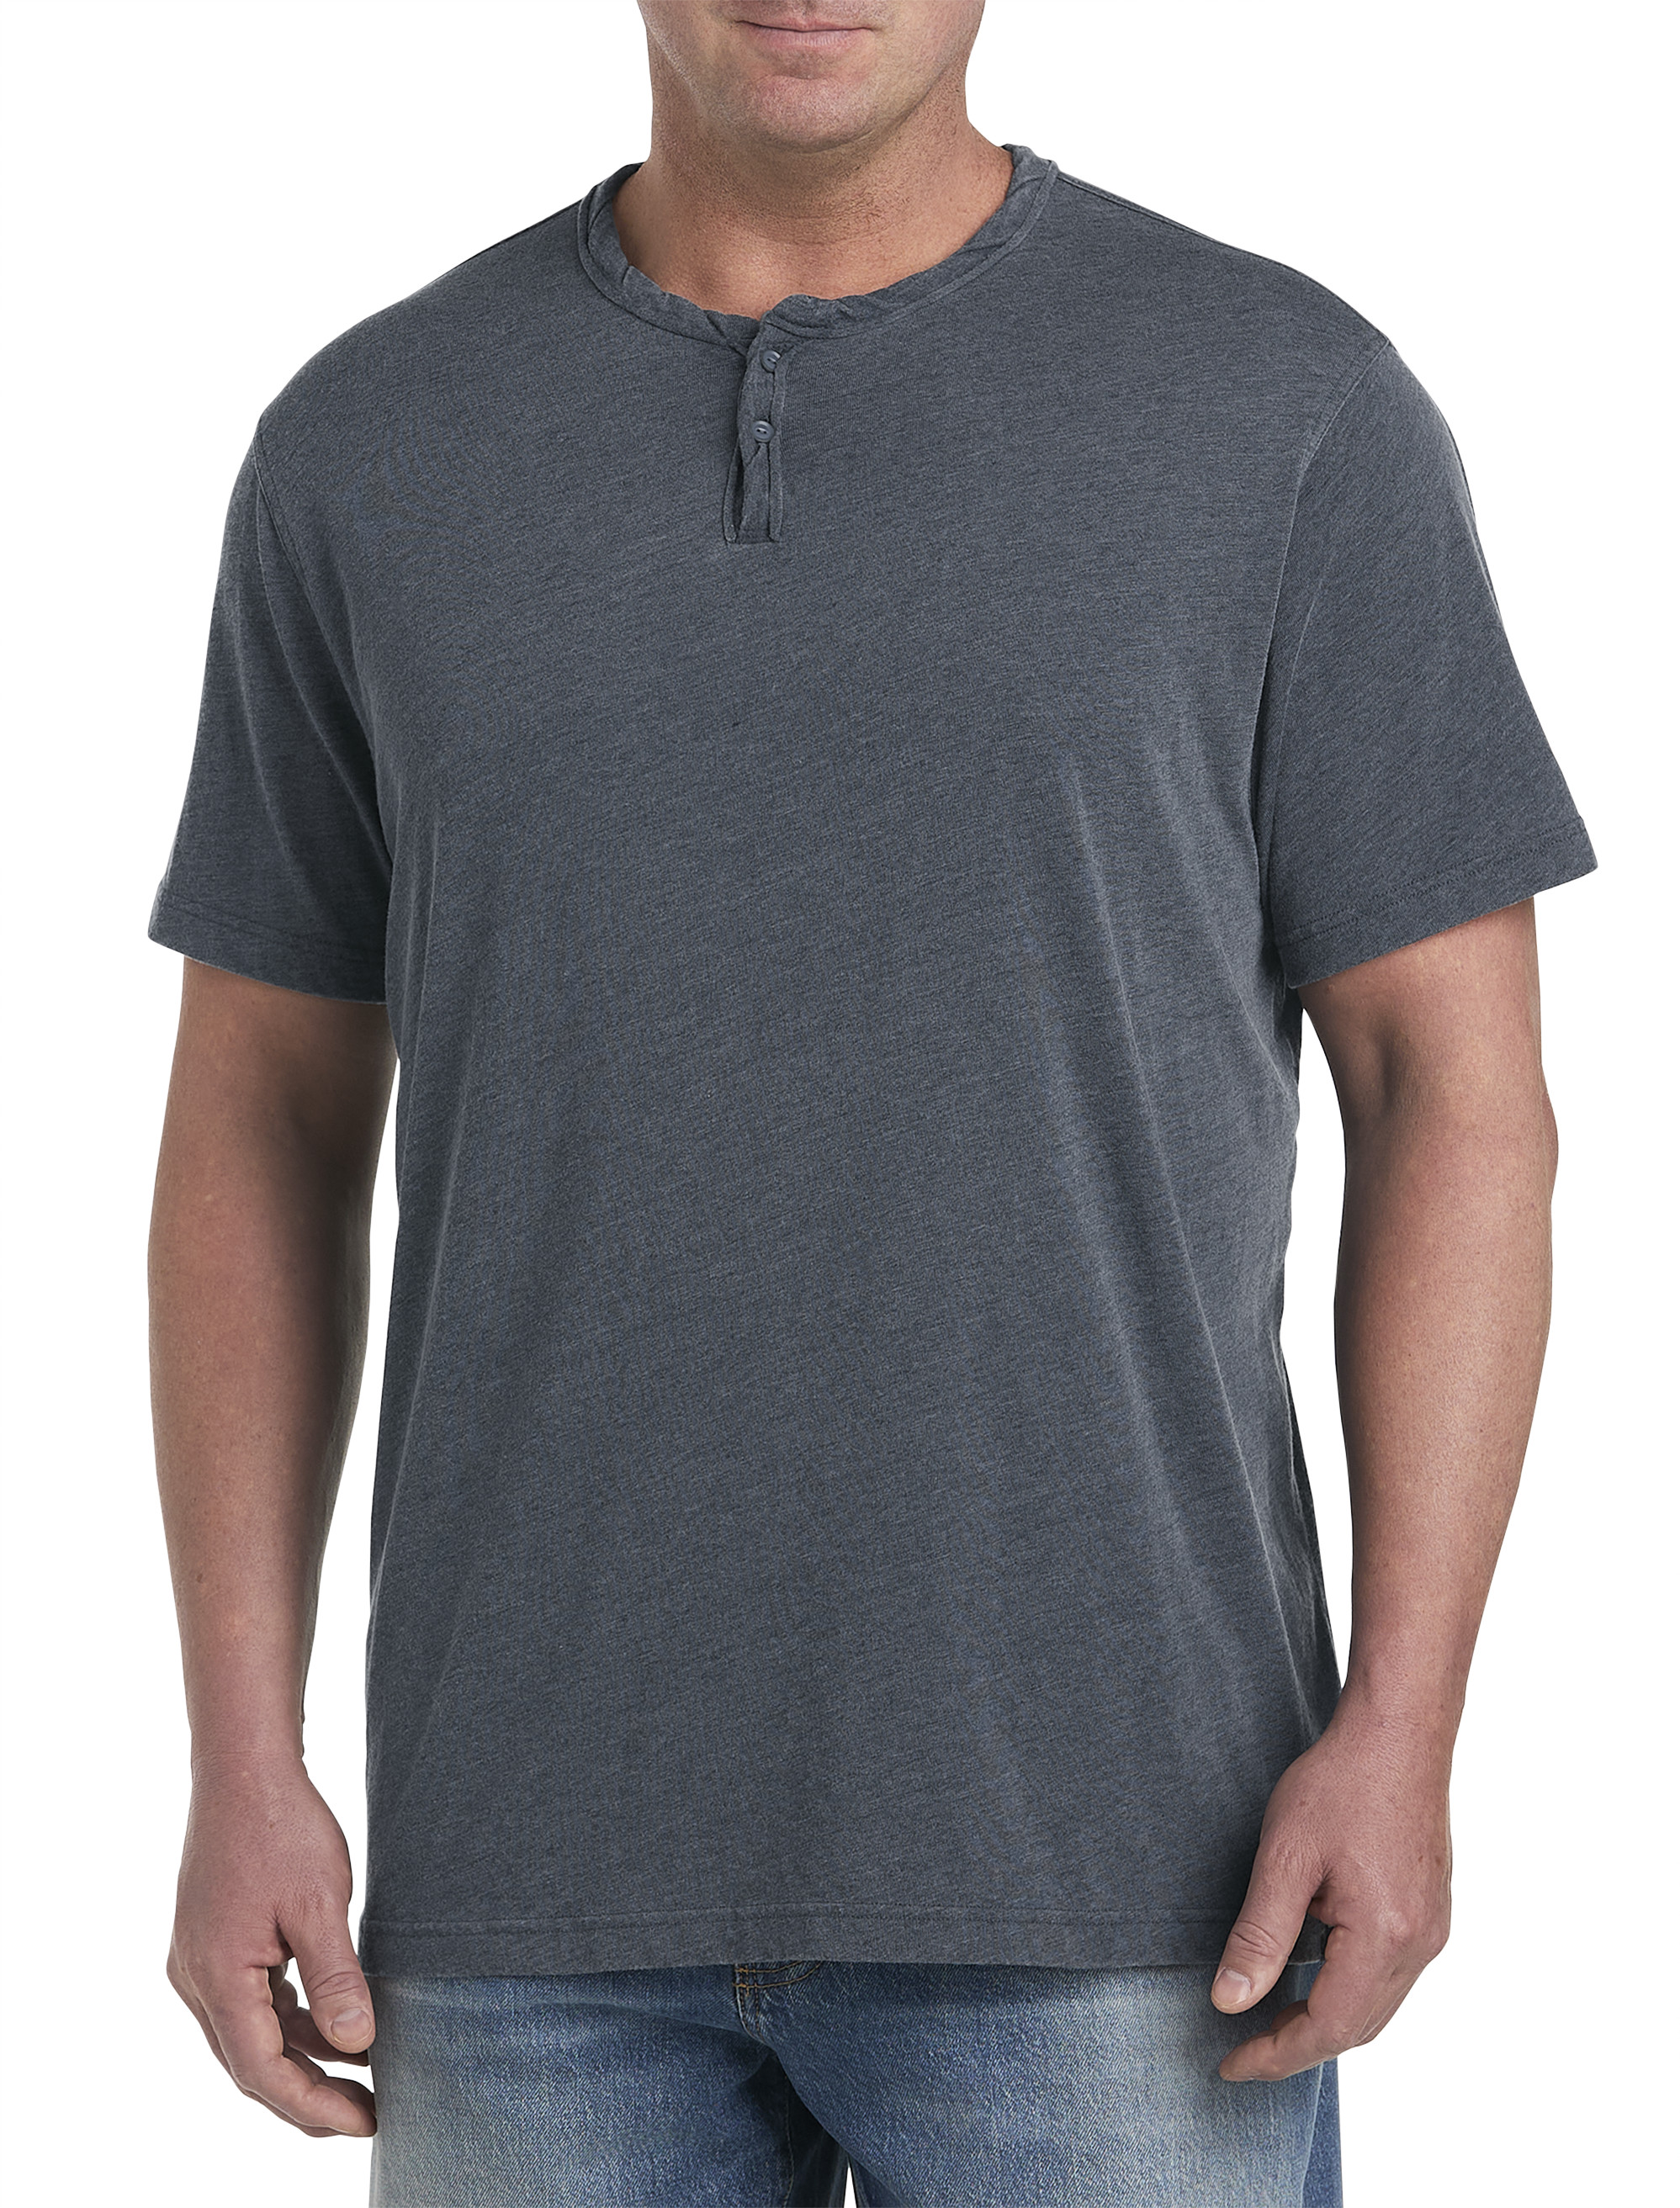 Lucky Brand Men's Long Sleeve Shirt - Casual Stretch T-Shirt